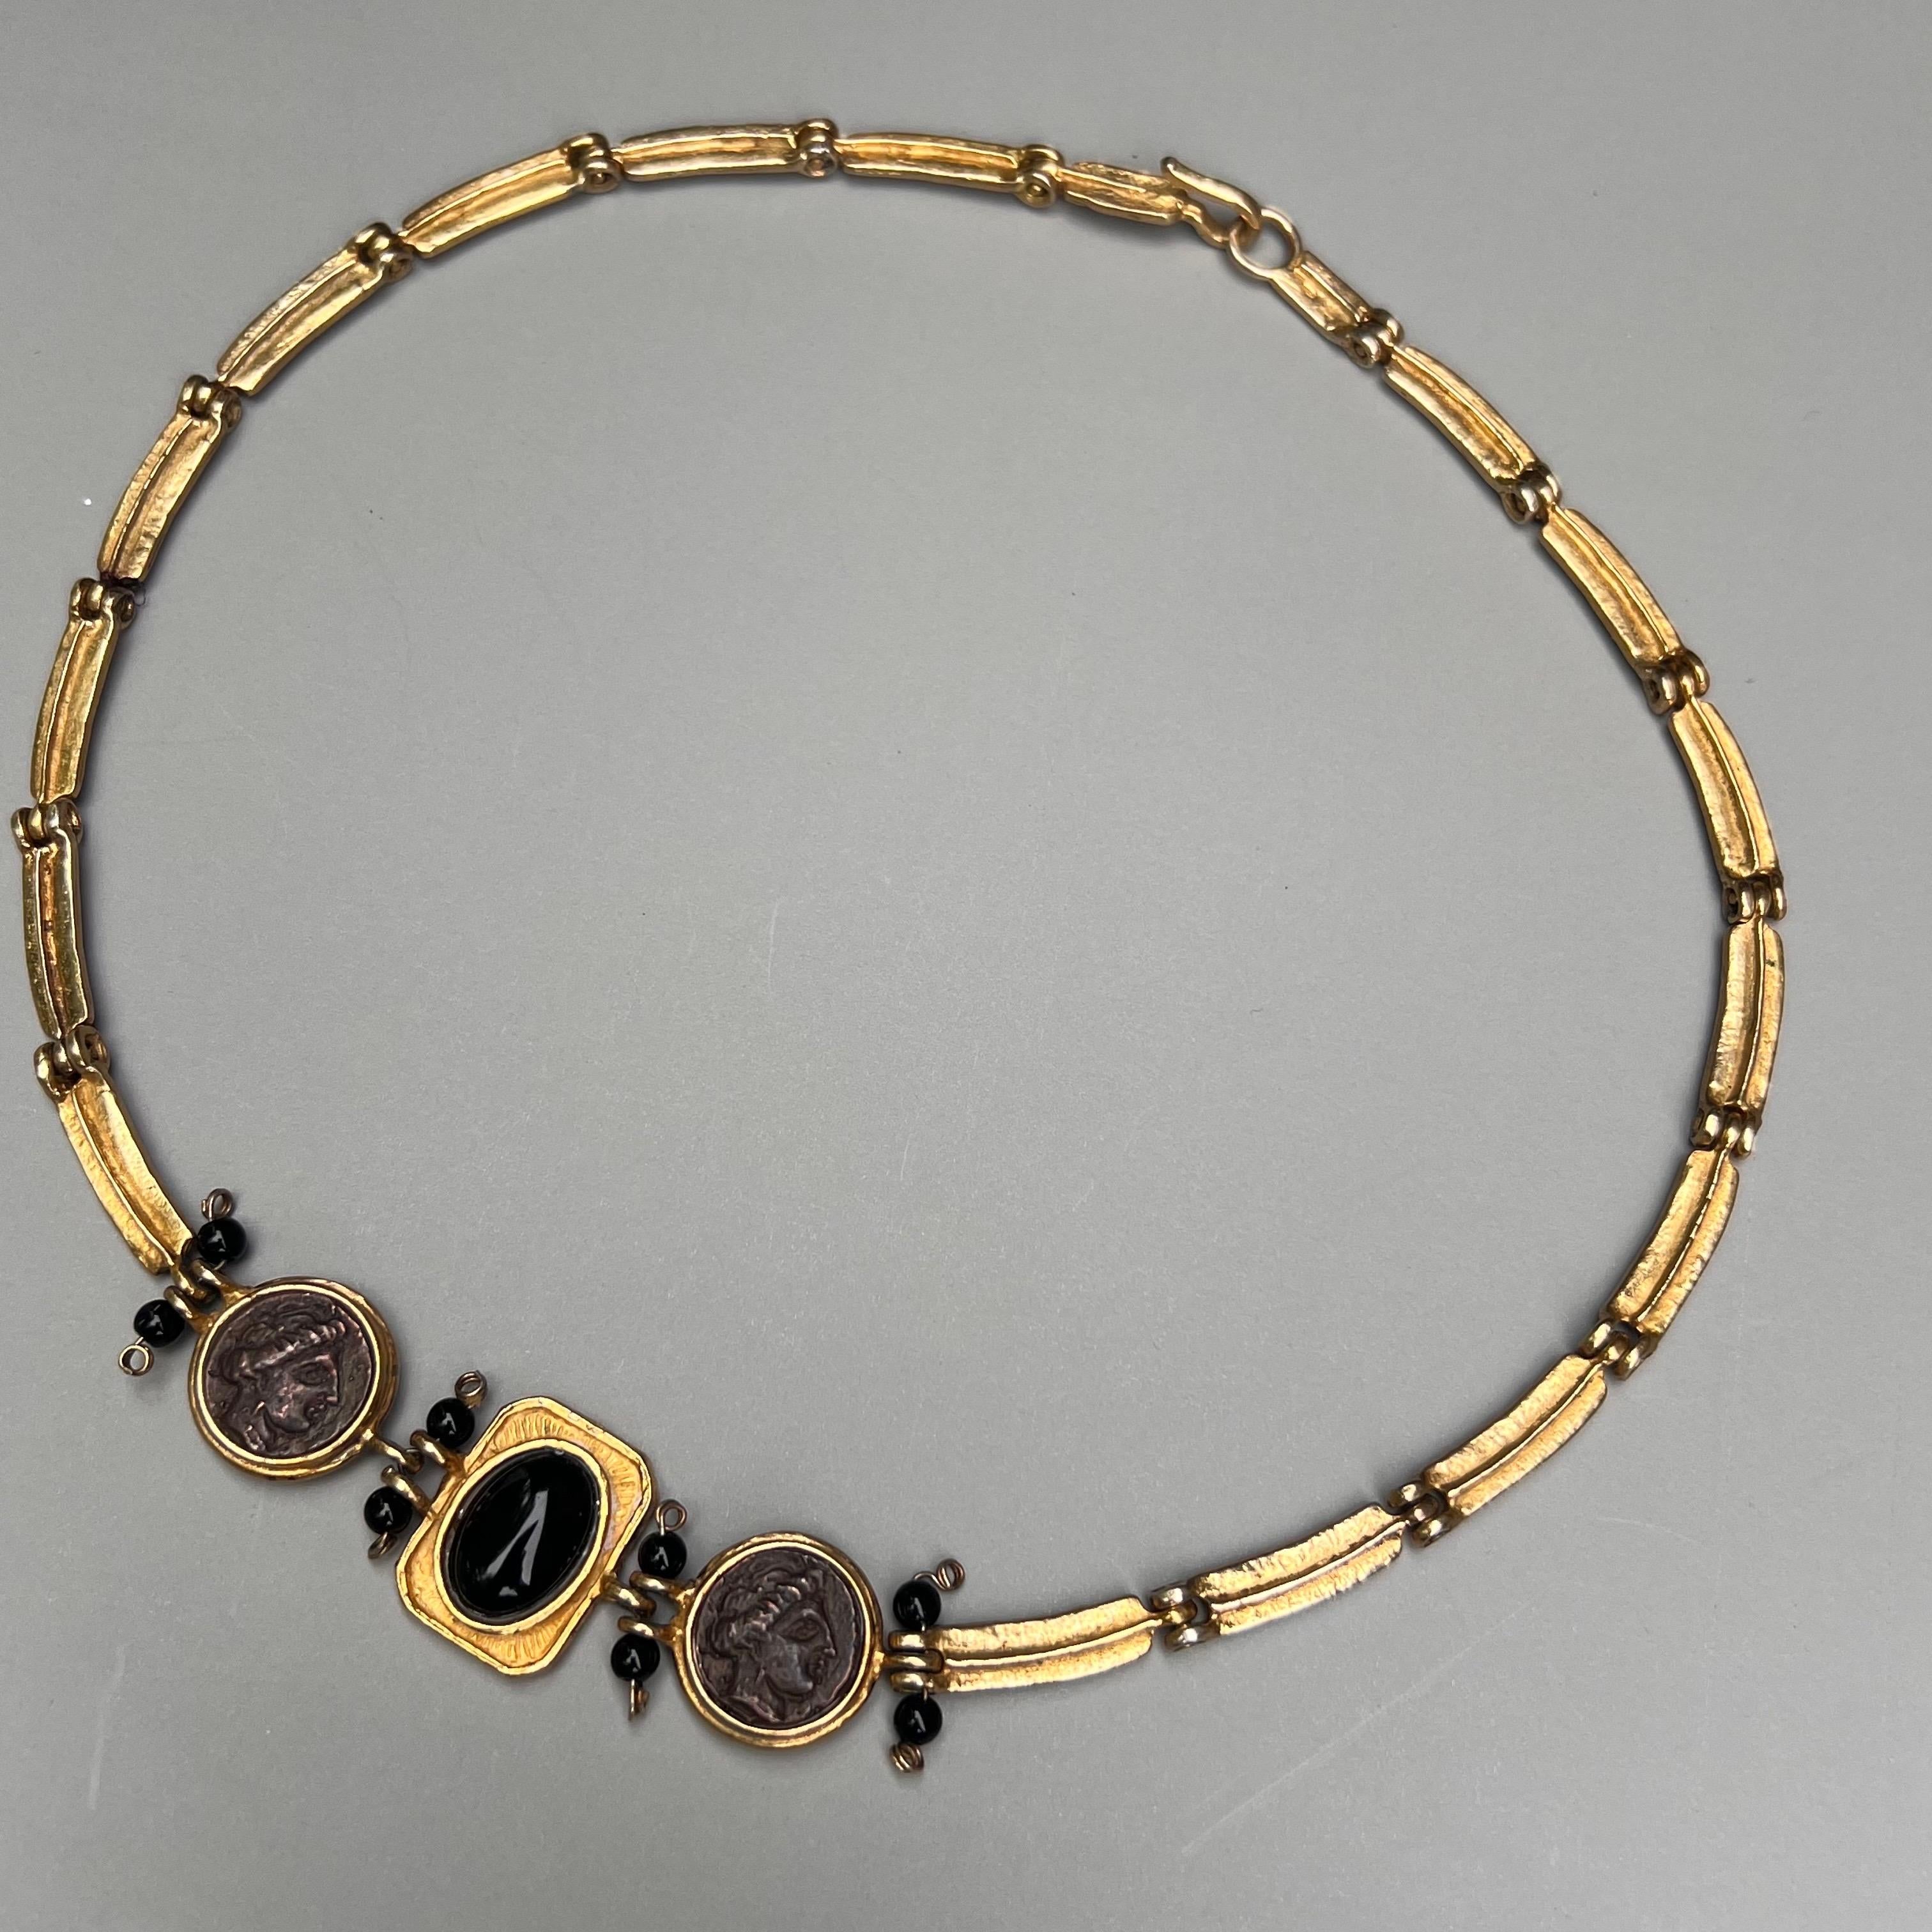 Diese Halskette ist von Hand aus vergoldetem Sterlingsilber gefertigt und strahlt einen Hauch von Vintage-Glamour und Geheimnis aus.
Die Halskette mit gefälschten römischen Münzen fängt die Essenz der antiken Mythologie ein und verleiht jedem